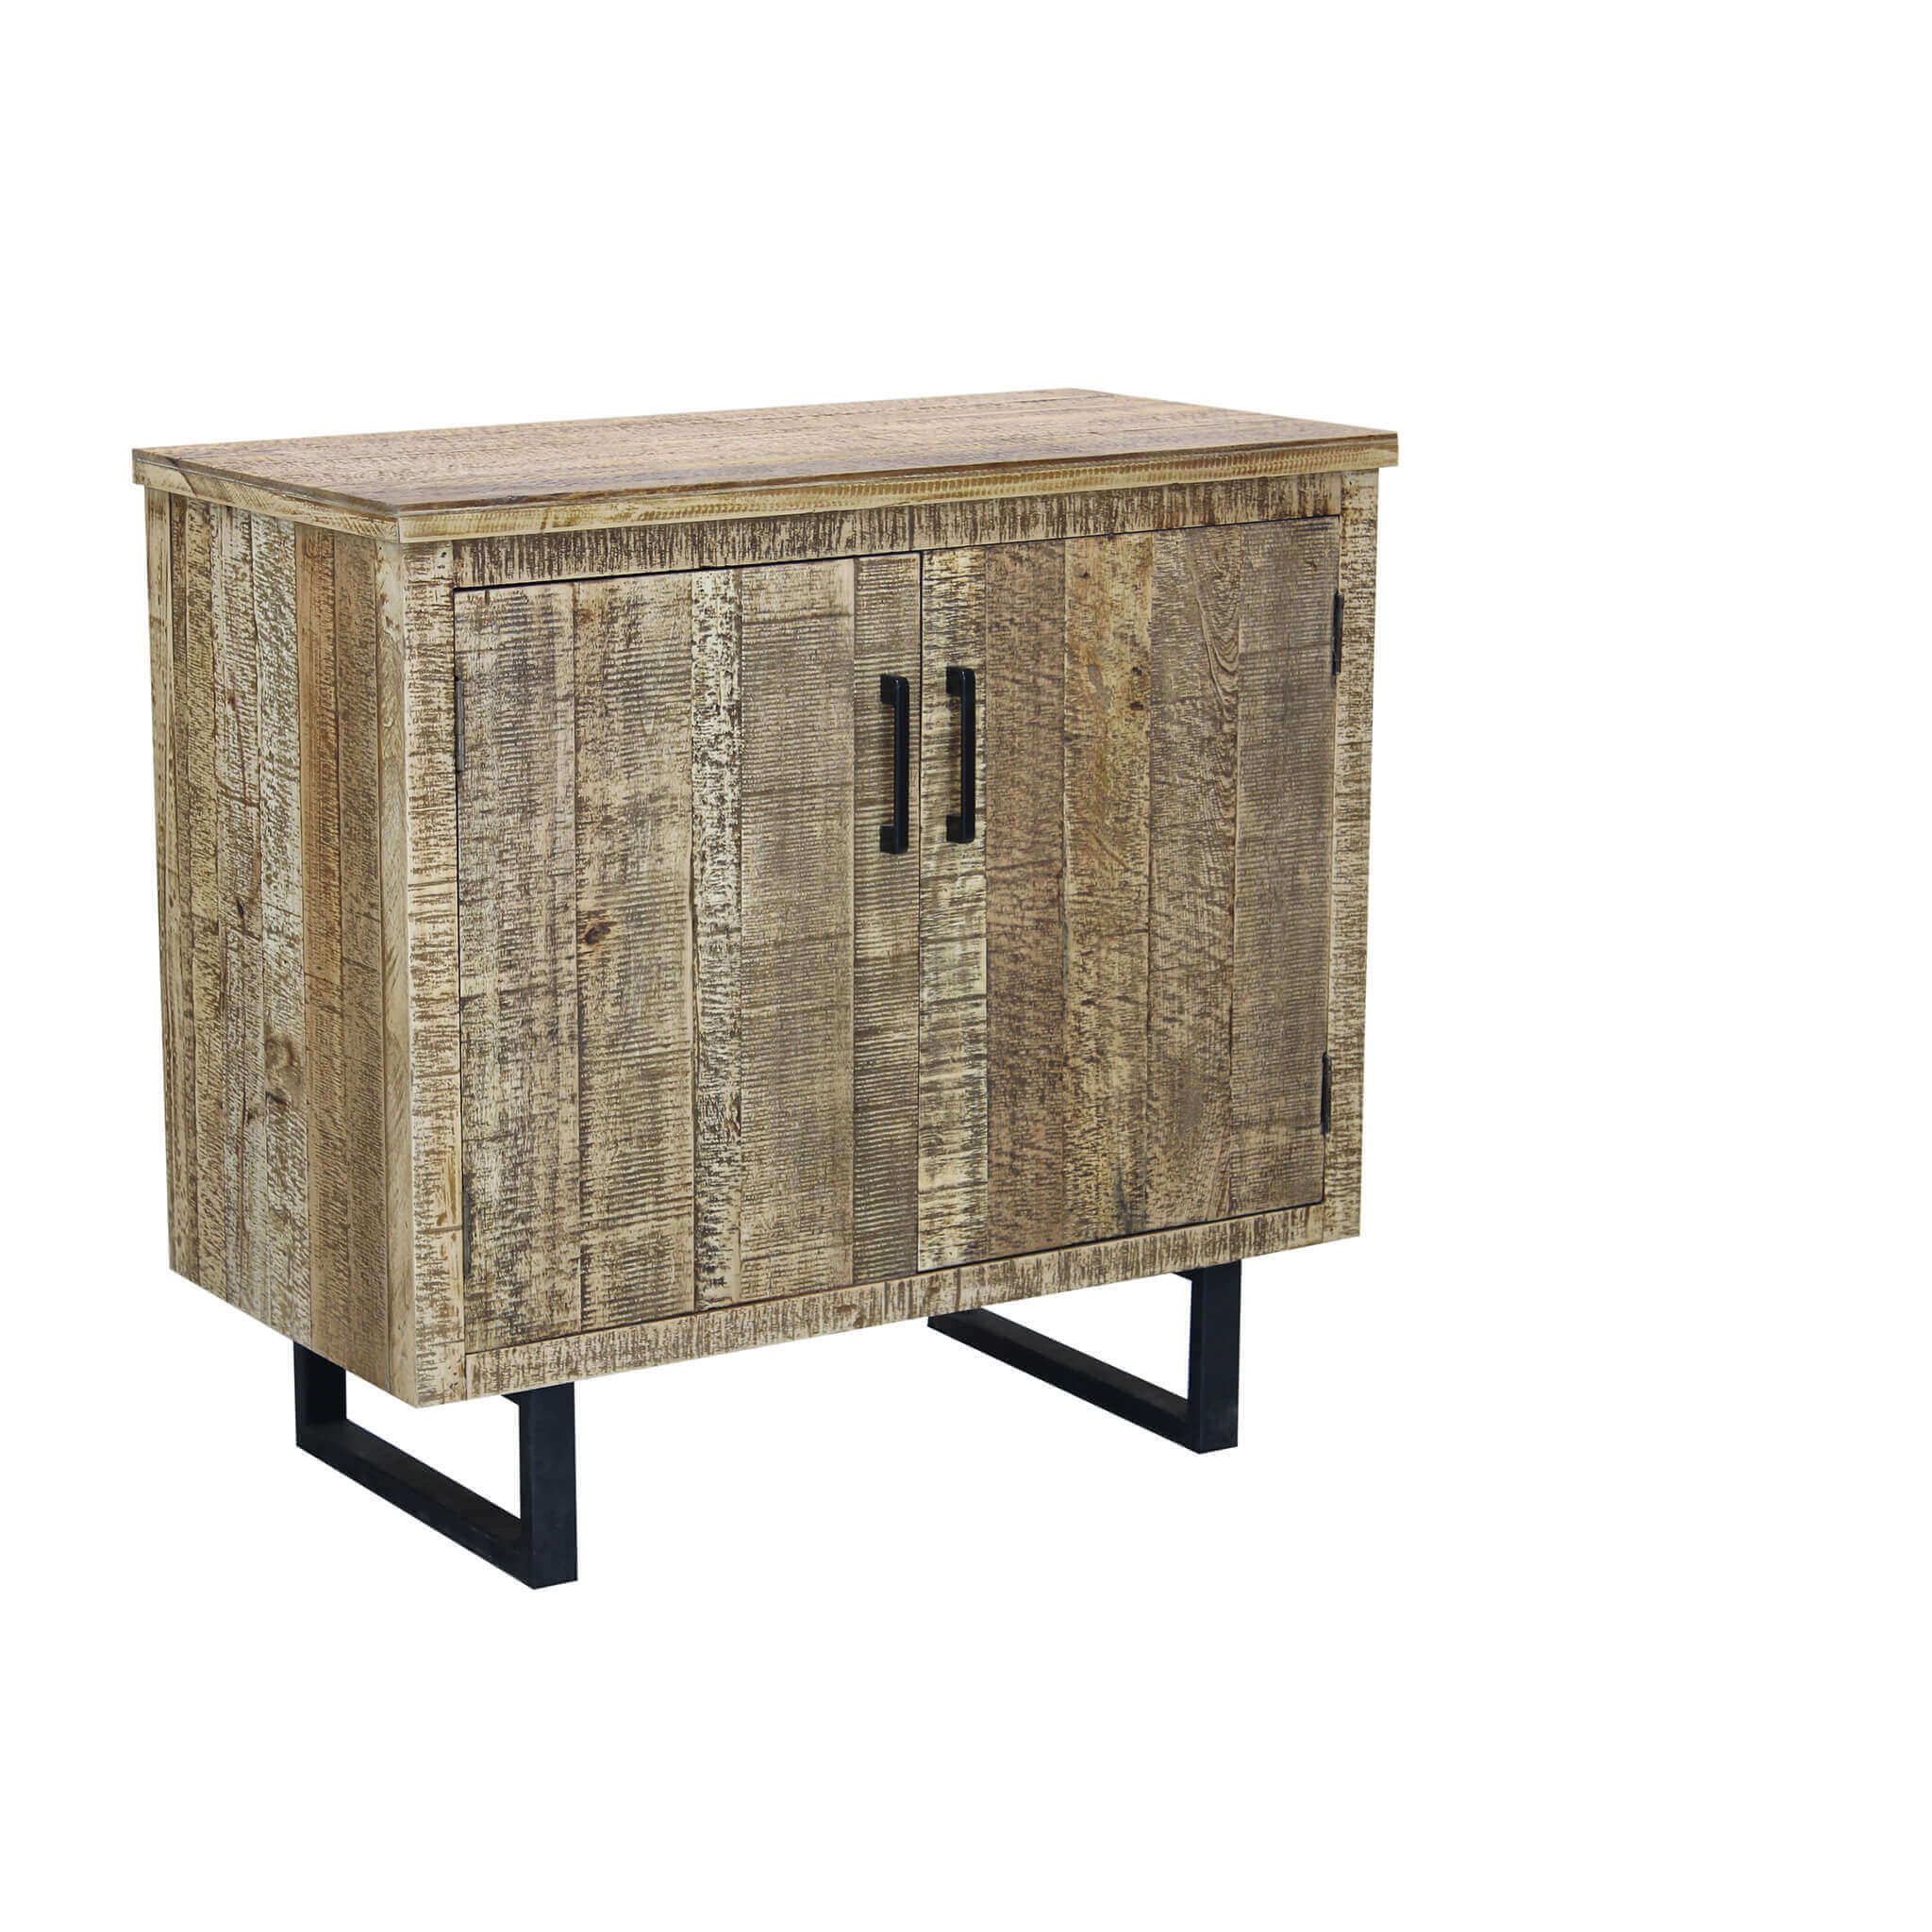 Milani Home madia a due ante in legno di design moderno per salotto cucina sala da pranzo c Marrone 90 x 83 x 45 cm